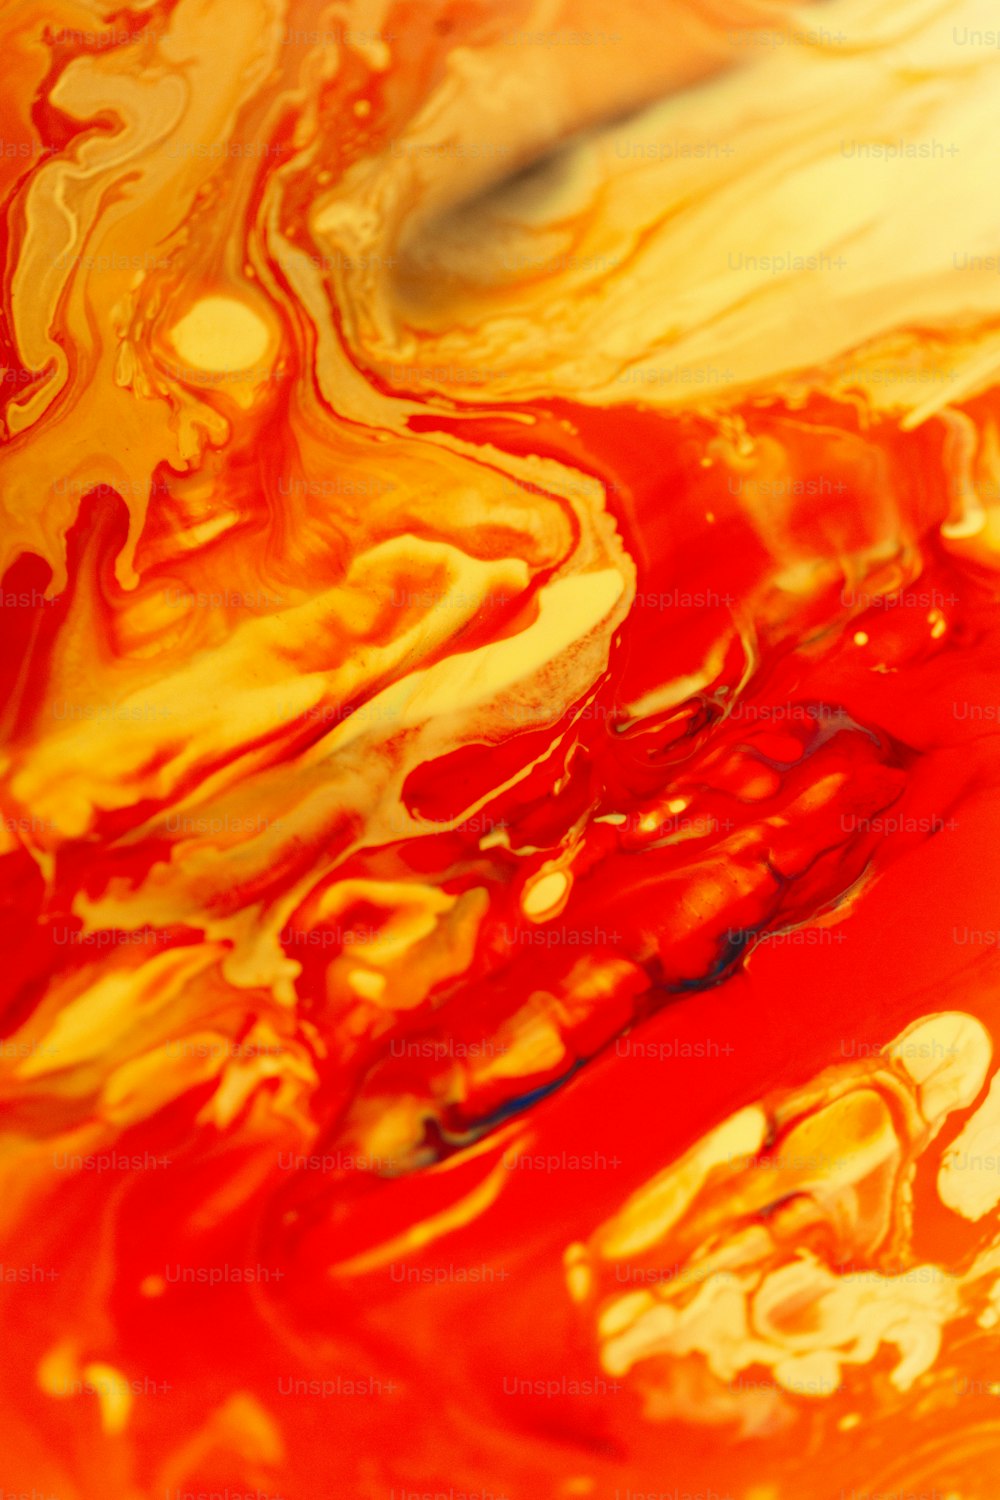 a close-up of a red liquid